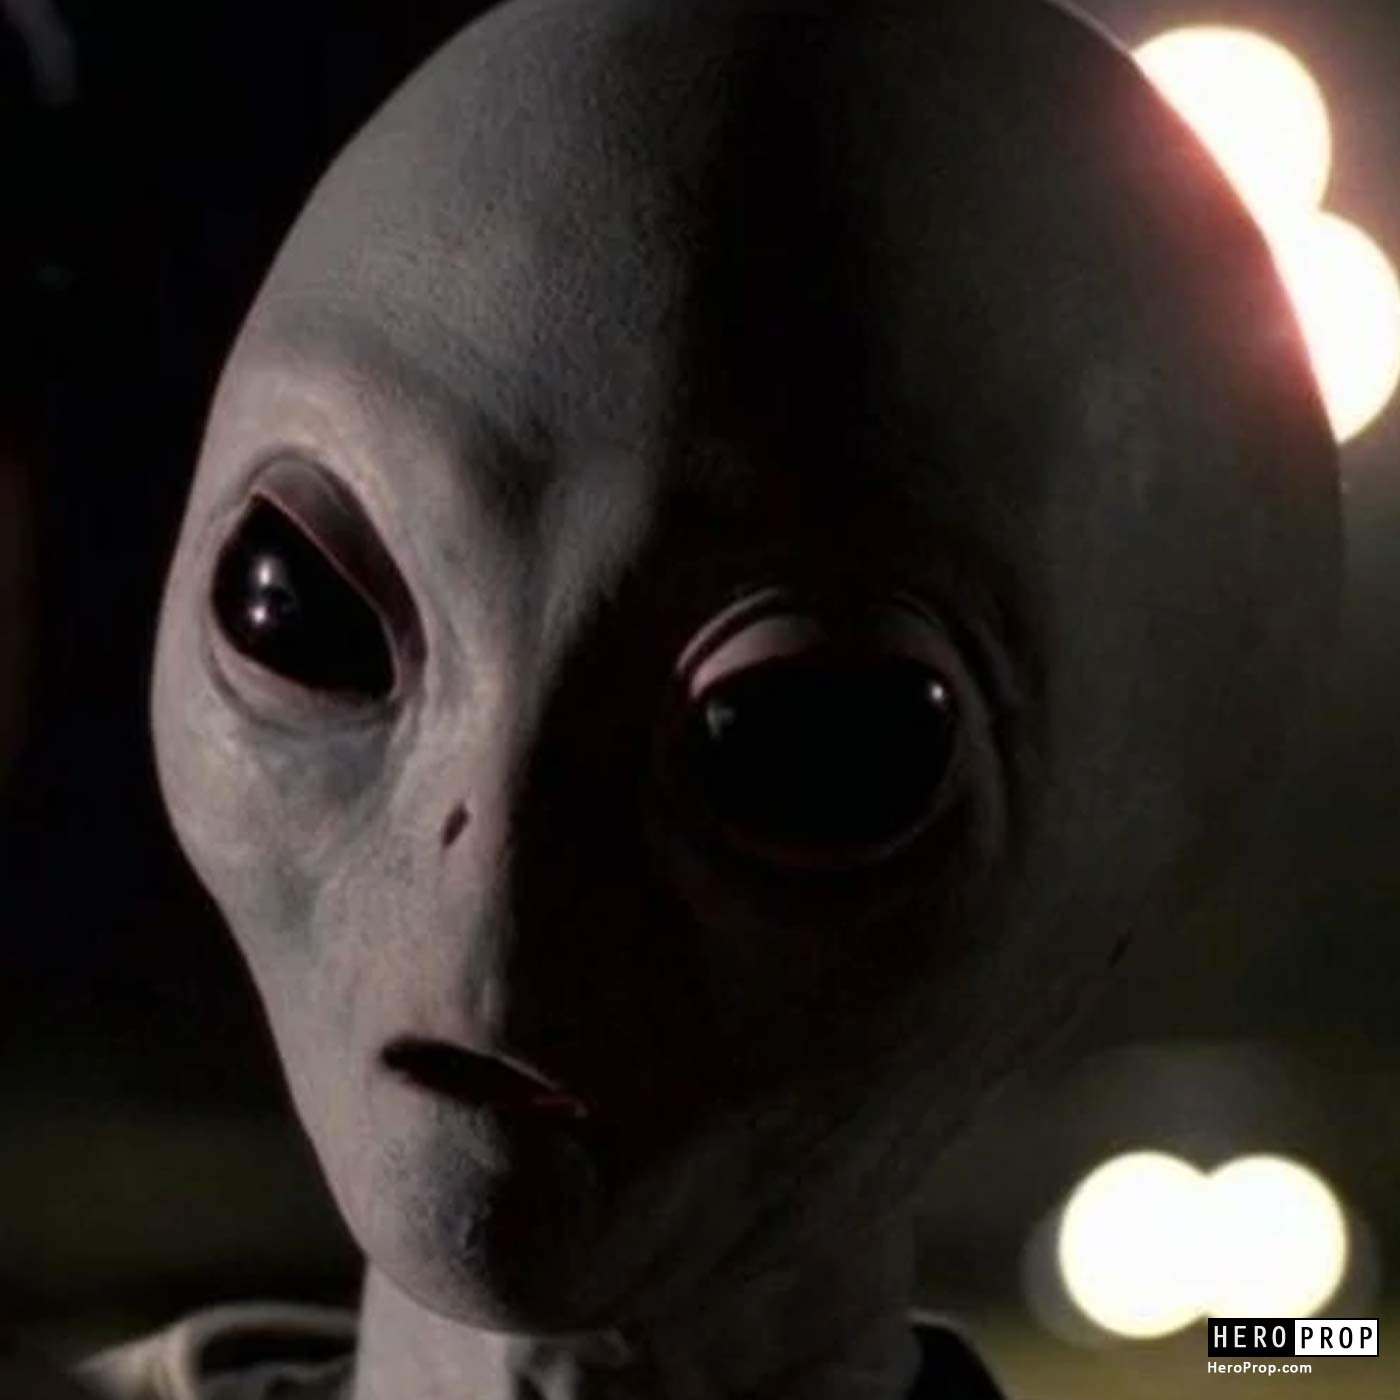 The X-Files (TV) - Alien “Colonist” Head - HeroProp.com